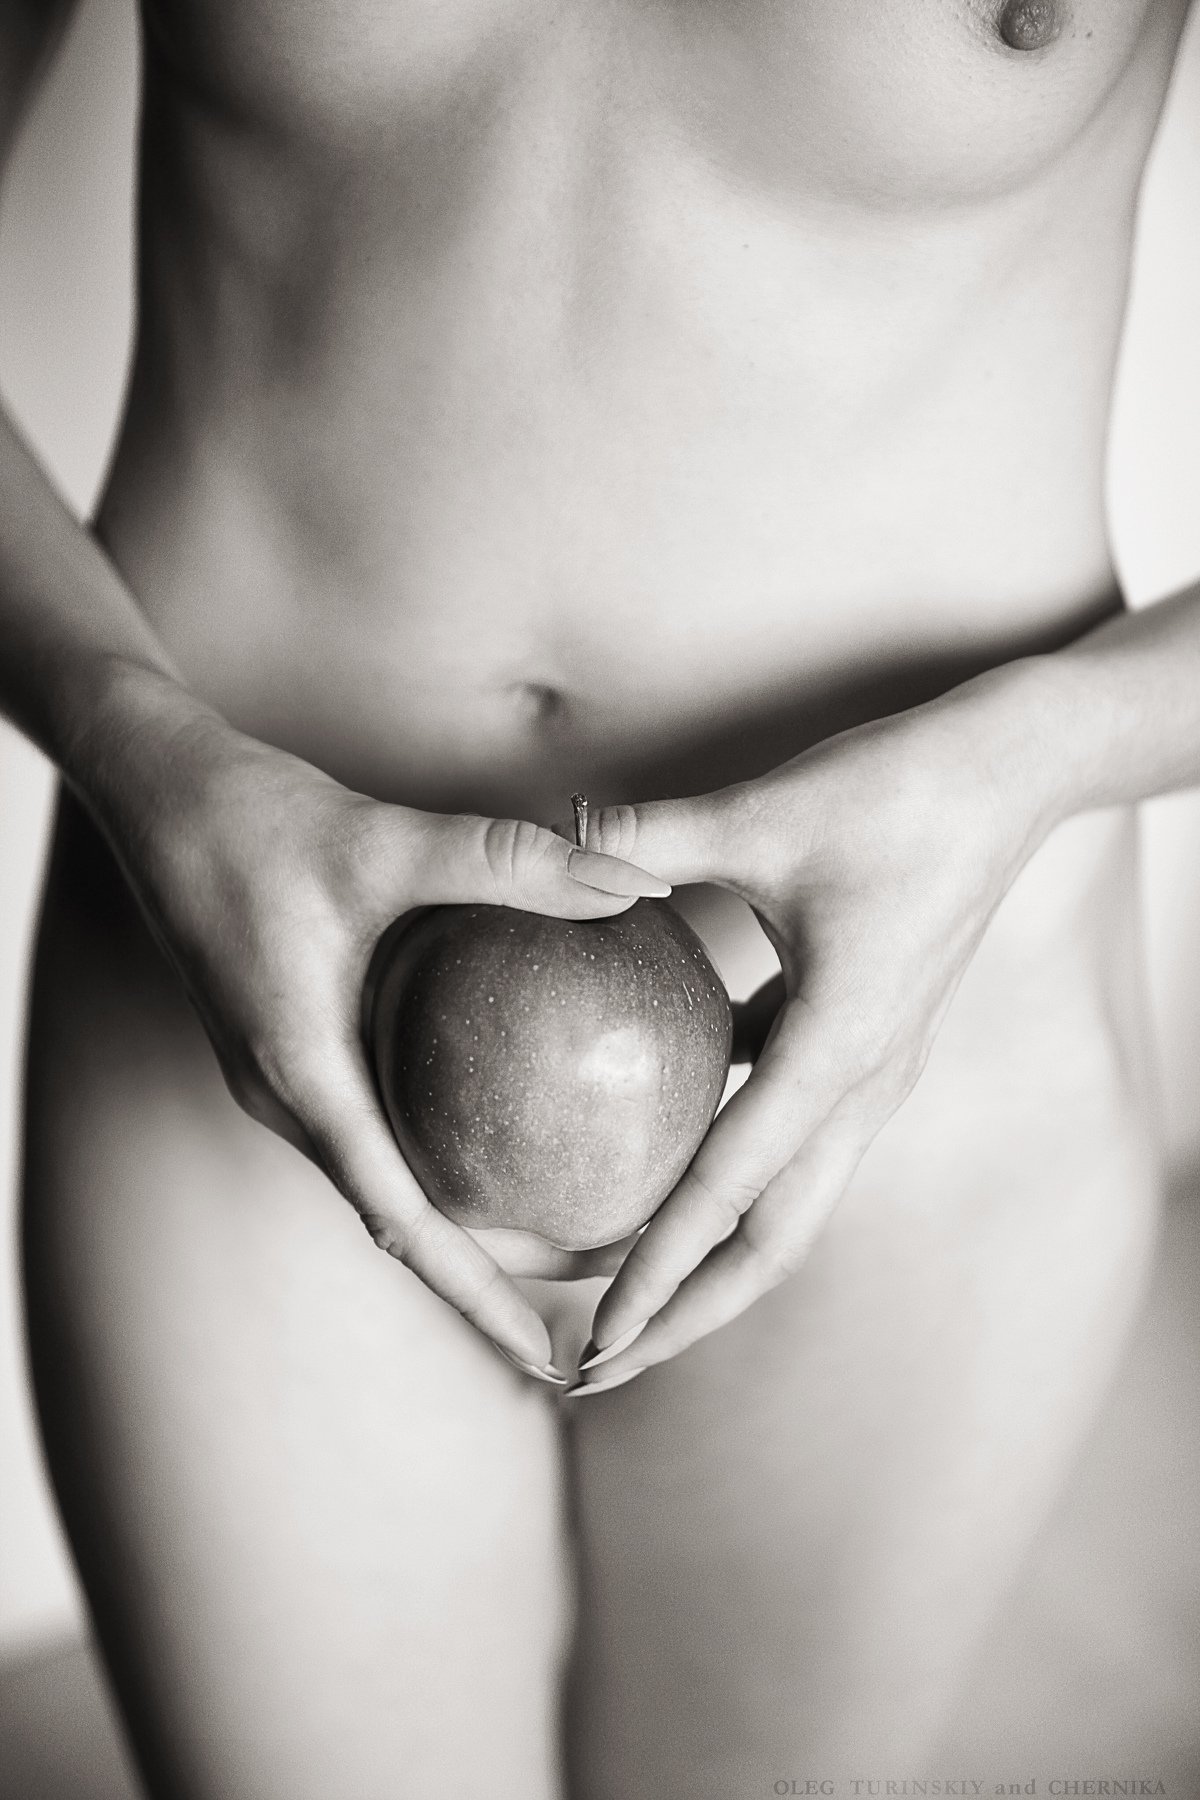 женщина тело обнаженка яблоко руки грудь, Олег Туринский